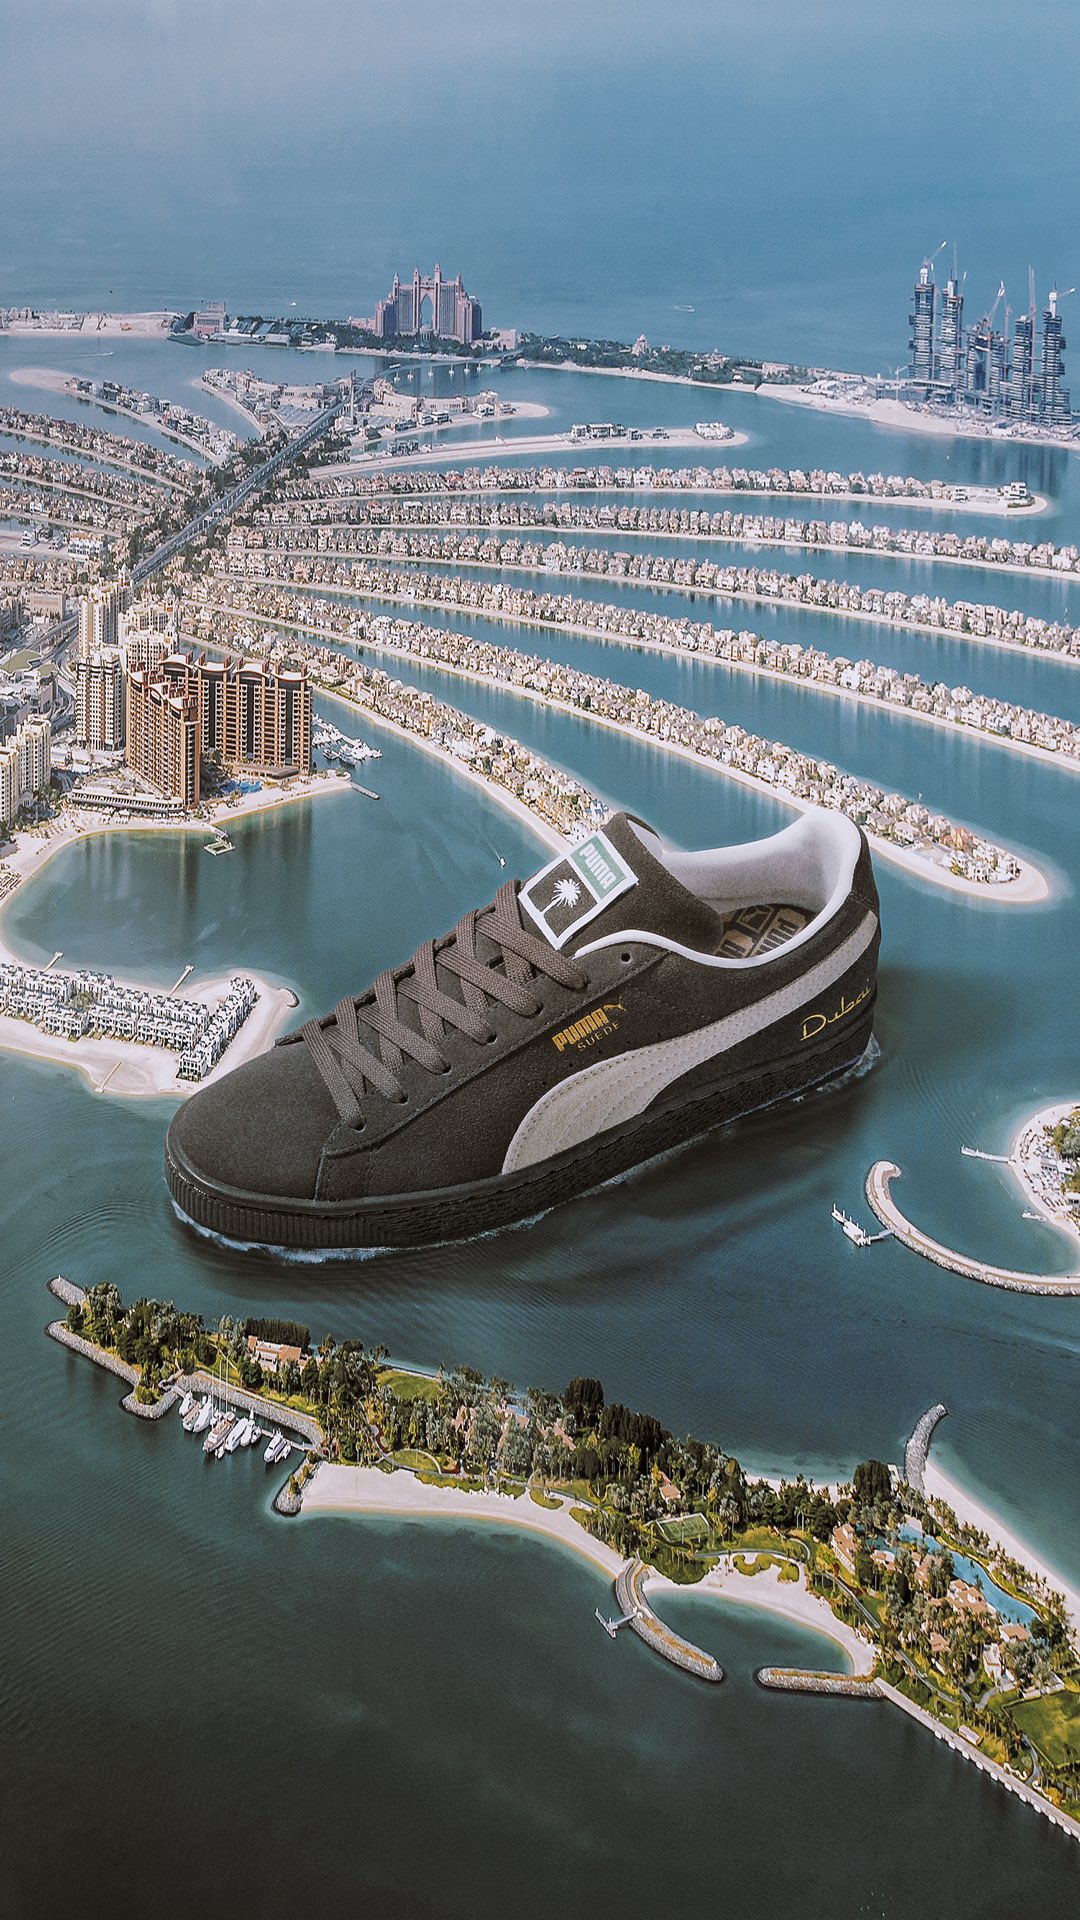 Dubai-inspired sneaker